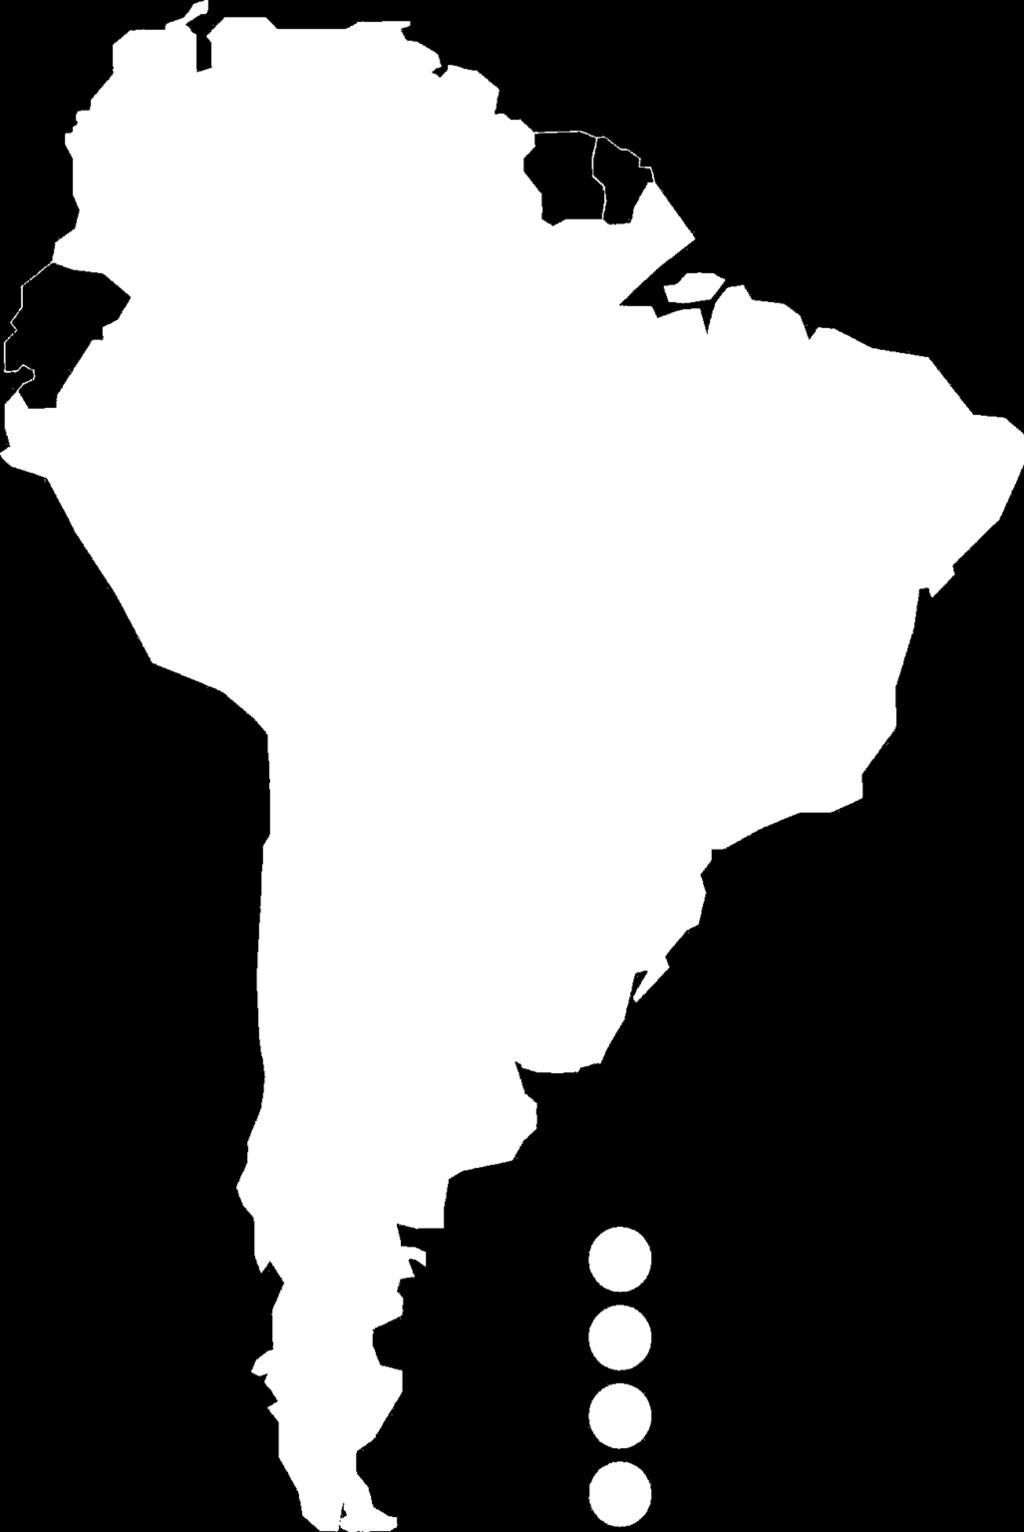 Situação da América do Sul Os recursos existentes são suficientes para suprir o consumo atual e o crescimento previsto.